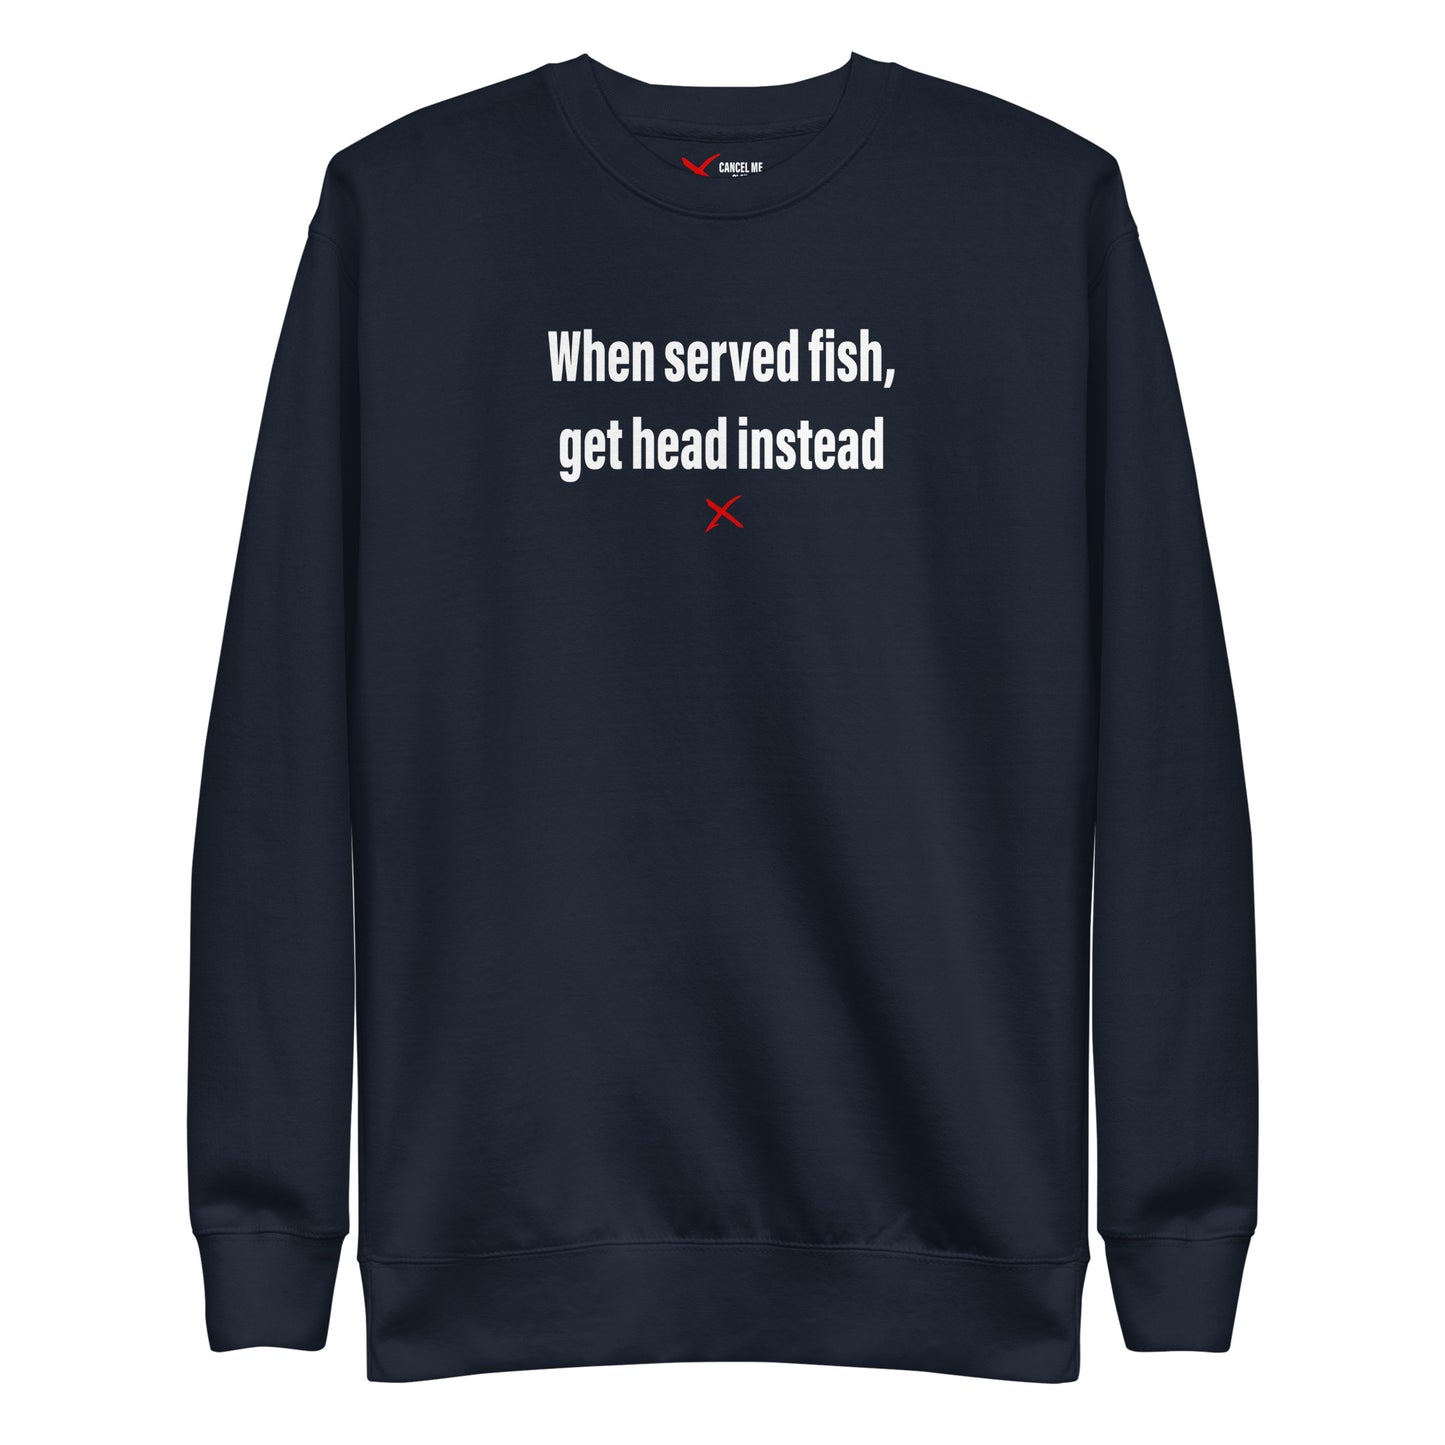 When served fish, get head instead - Sweatshirt